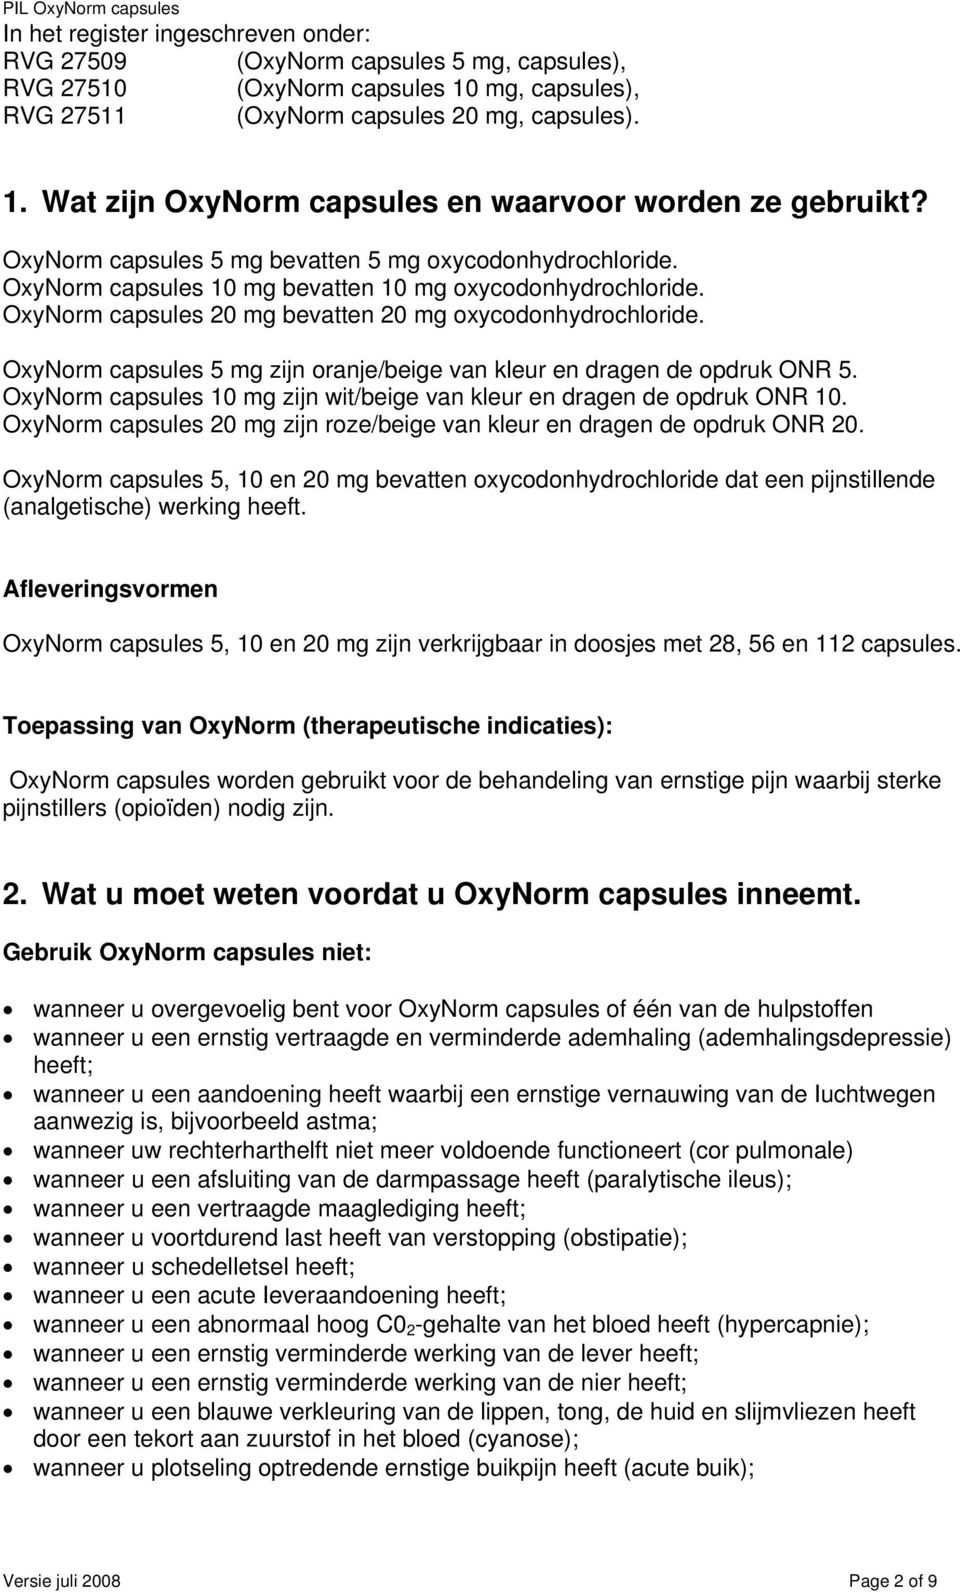 OxyNorm capsules 5 mg zijn oranje/beige van kleur en dragen de opdruk ONR 5. OxyNorm capsules 10 mg zijn wit/beige van kleur en dragen de opdruk ONR 10.